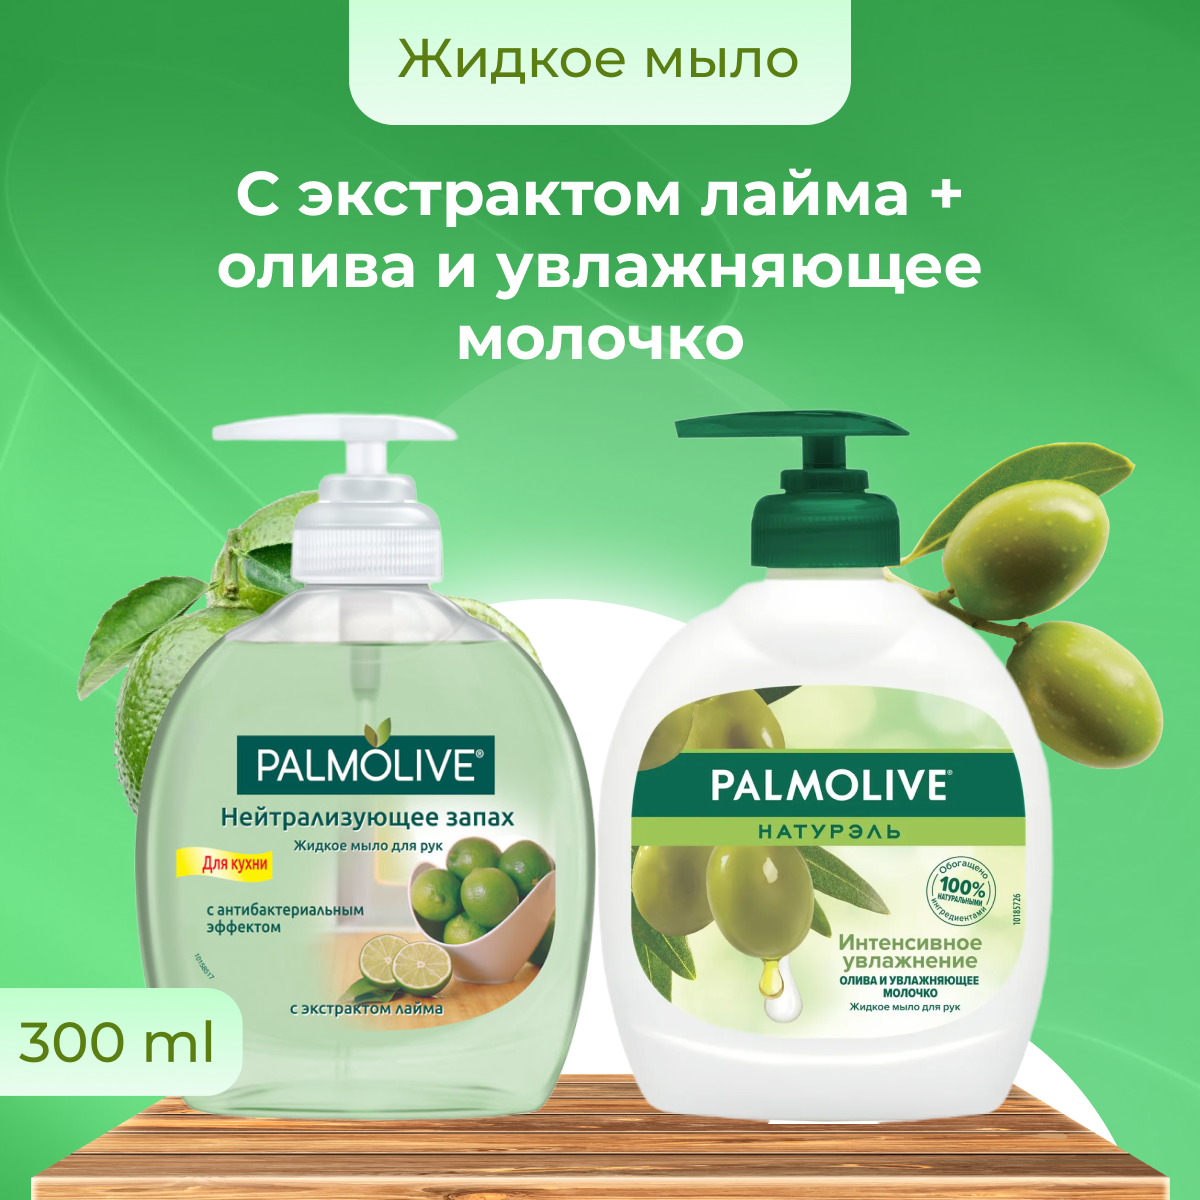 Жидкое мыло Palmolive Нейтрализующее запах с экстрактом лайма для кухни 300 мл + Олива и увлажняющее молочко 300 мл